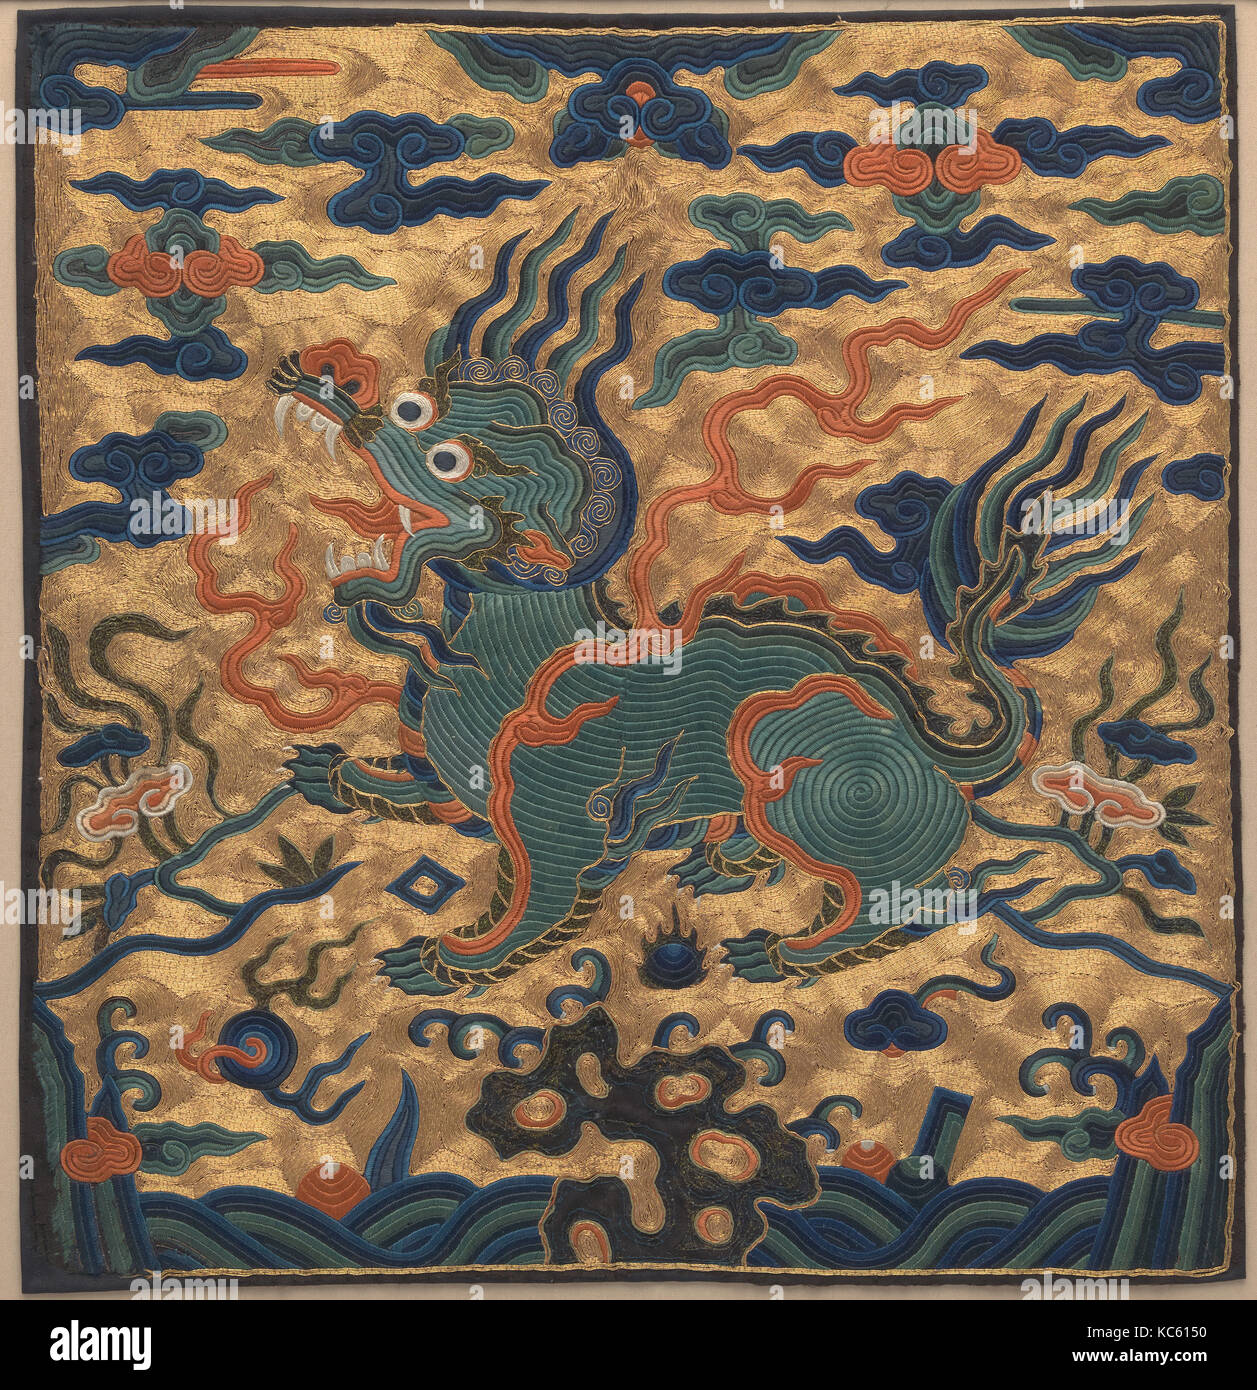 Insigne de rang avec l'ours stylisé, de la dynastie Qing (1644-1911), 18e siècle, la Chine, soie, plumes, fil métallique et broderie sur Banque D'Images